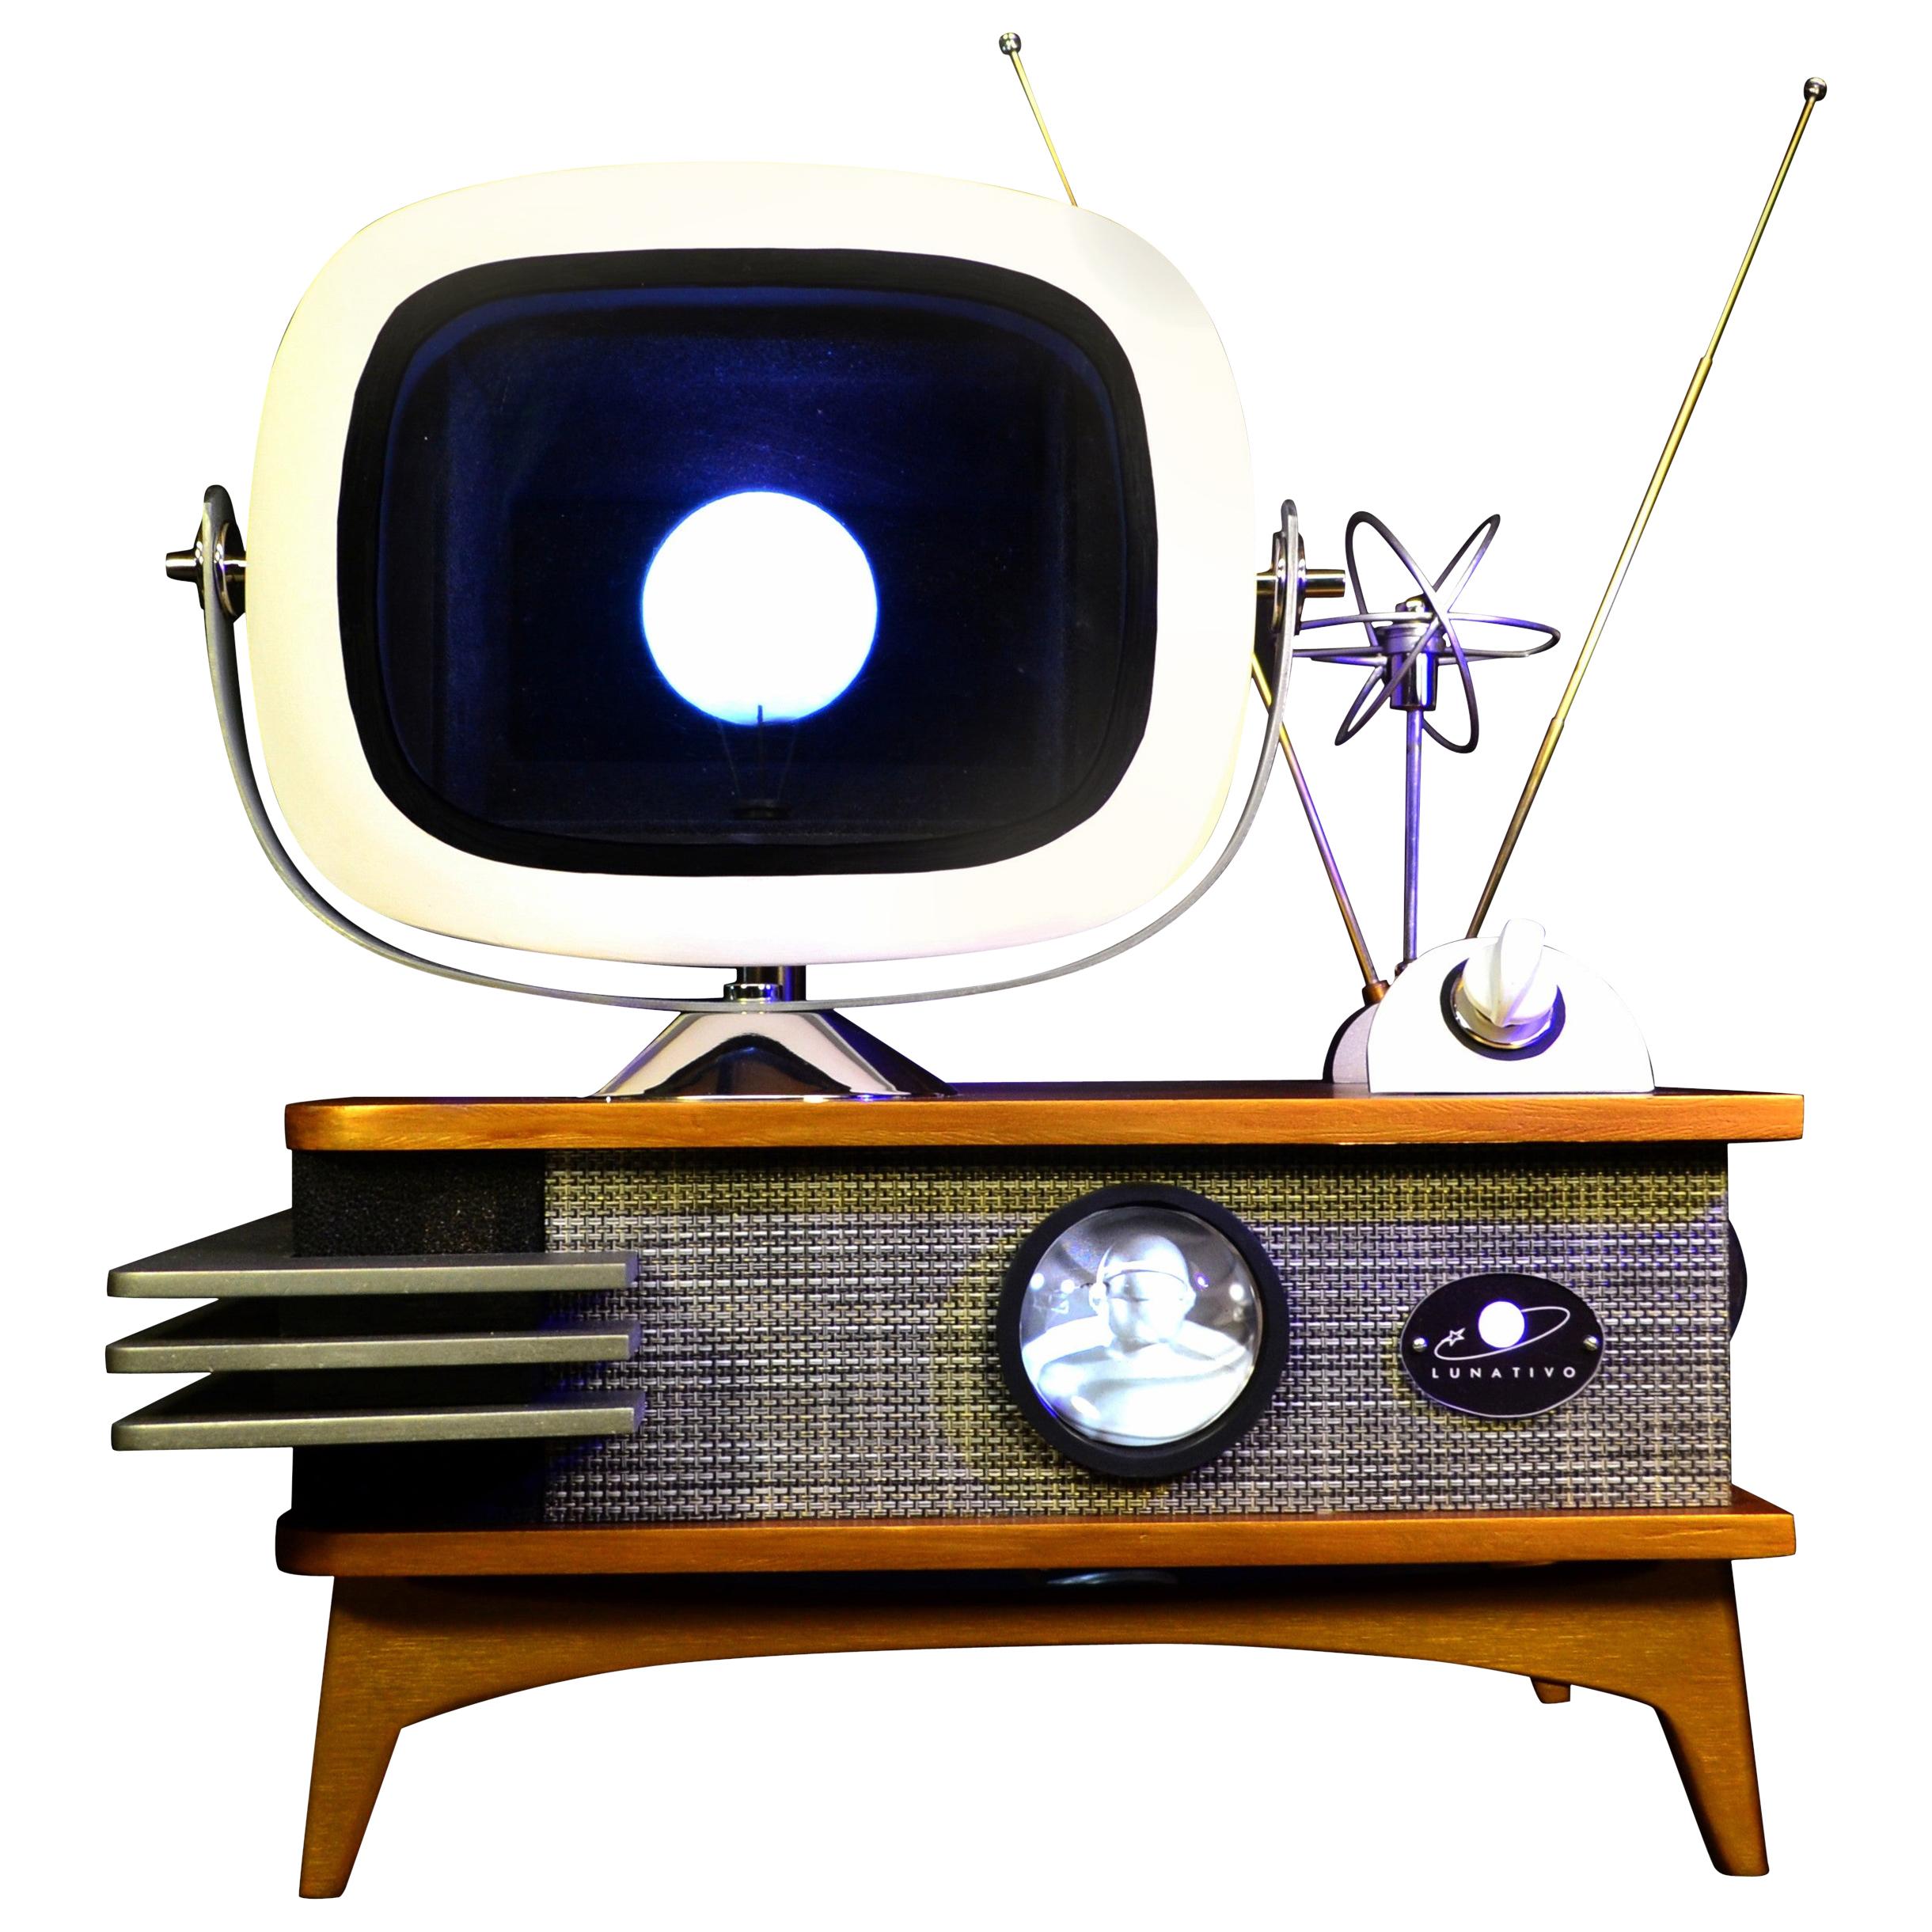 Art Donovan / Kinetic, Illuminated, Moon TV Sculpture, Midcentury/Atomic Age